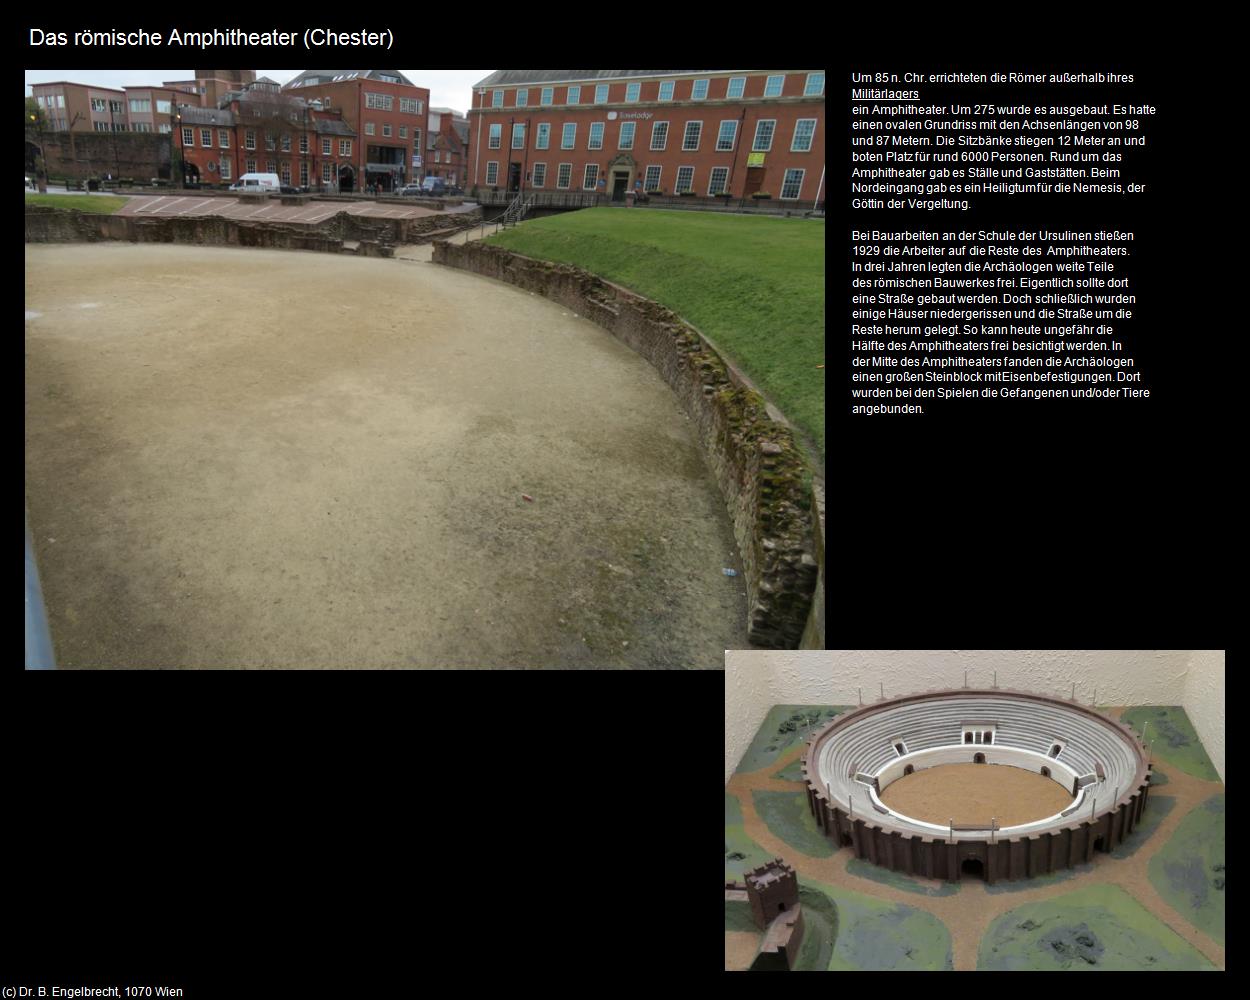 Das römische Amphitheater (Chester, England) in Kulturatlas-ENGLAND und WALES(c)B.Engelbrecht